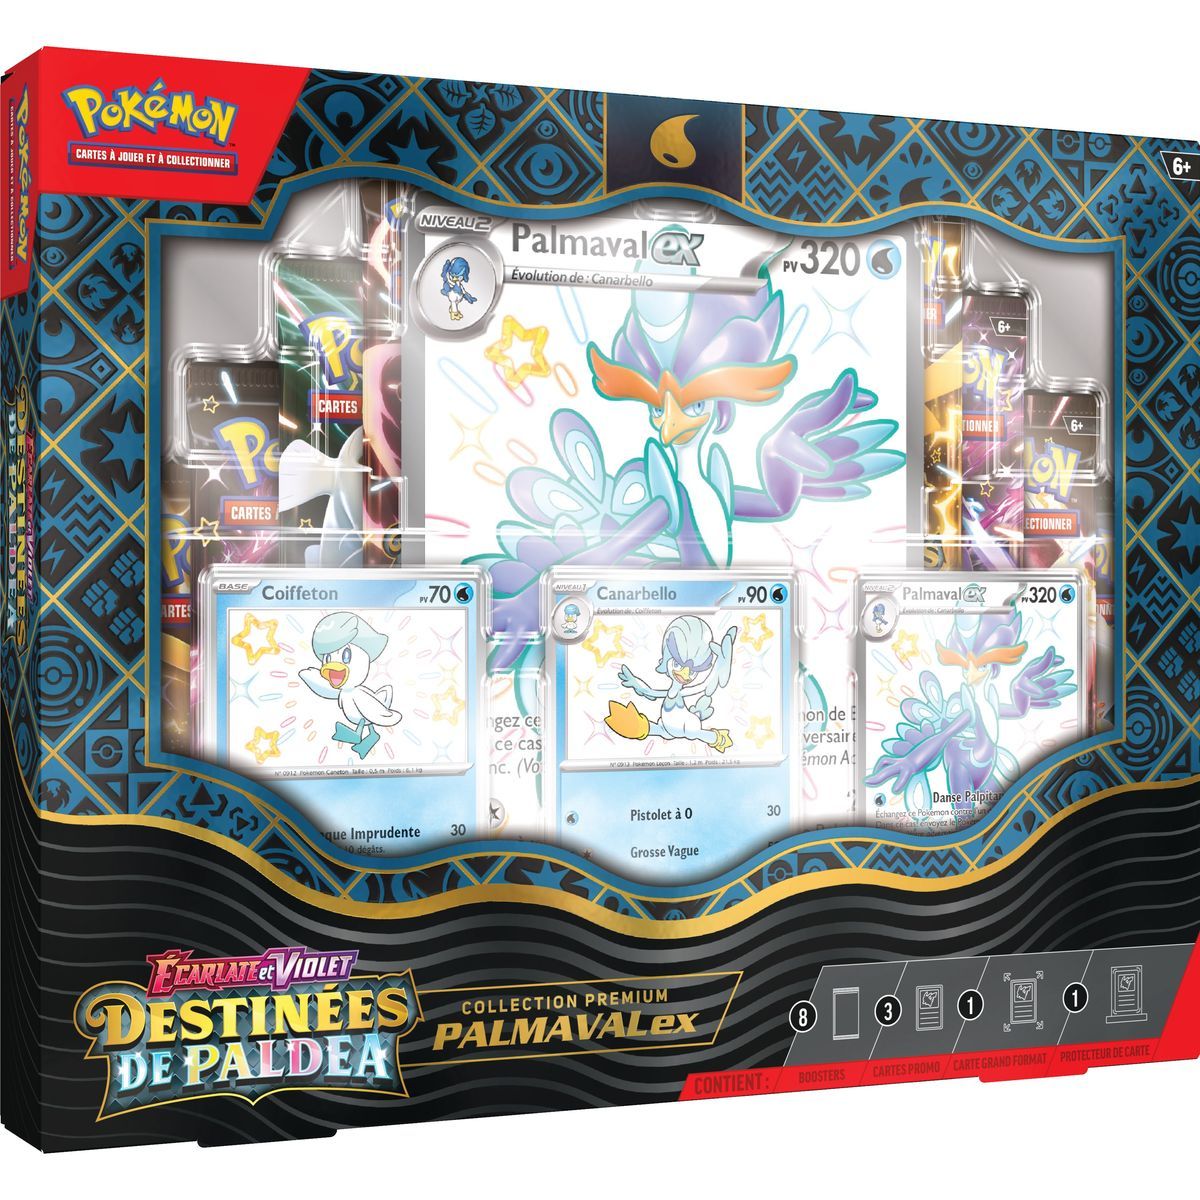 Item Pokémon - Coffret Collection Écarlate et Violet : Destinées de Paldea Palmaval-EX -[SV04.5 - EV04.5] - FR